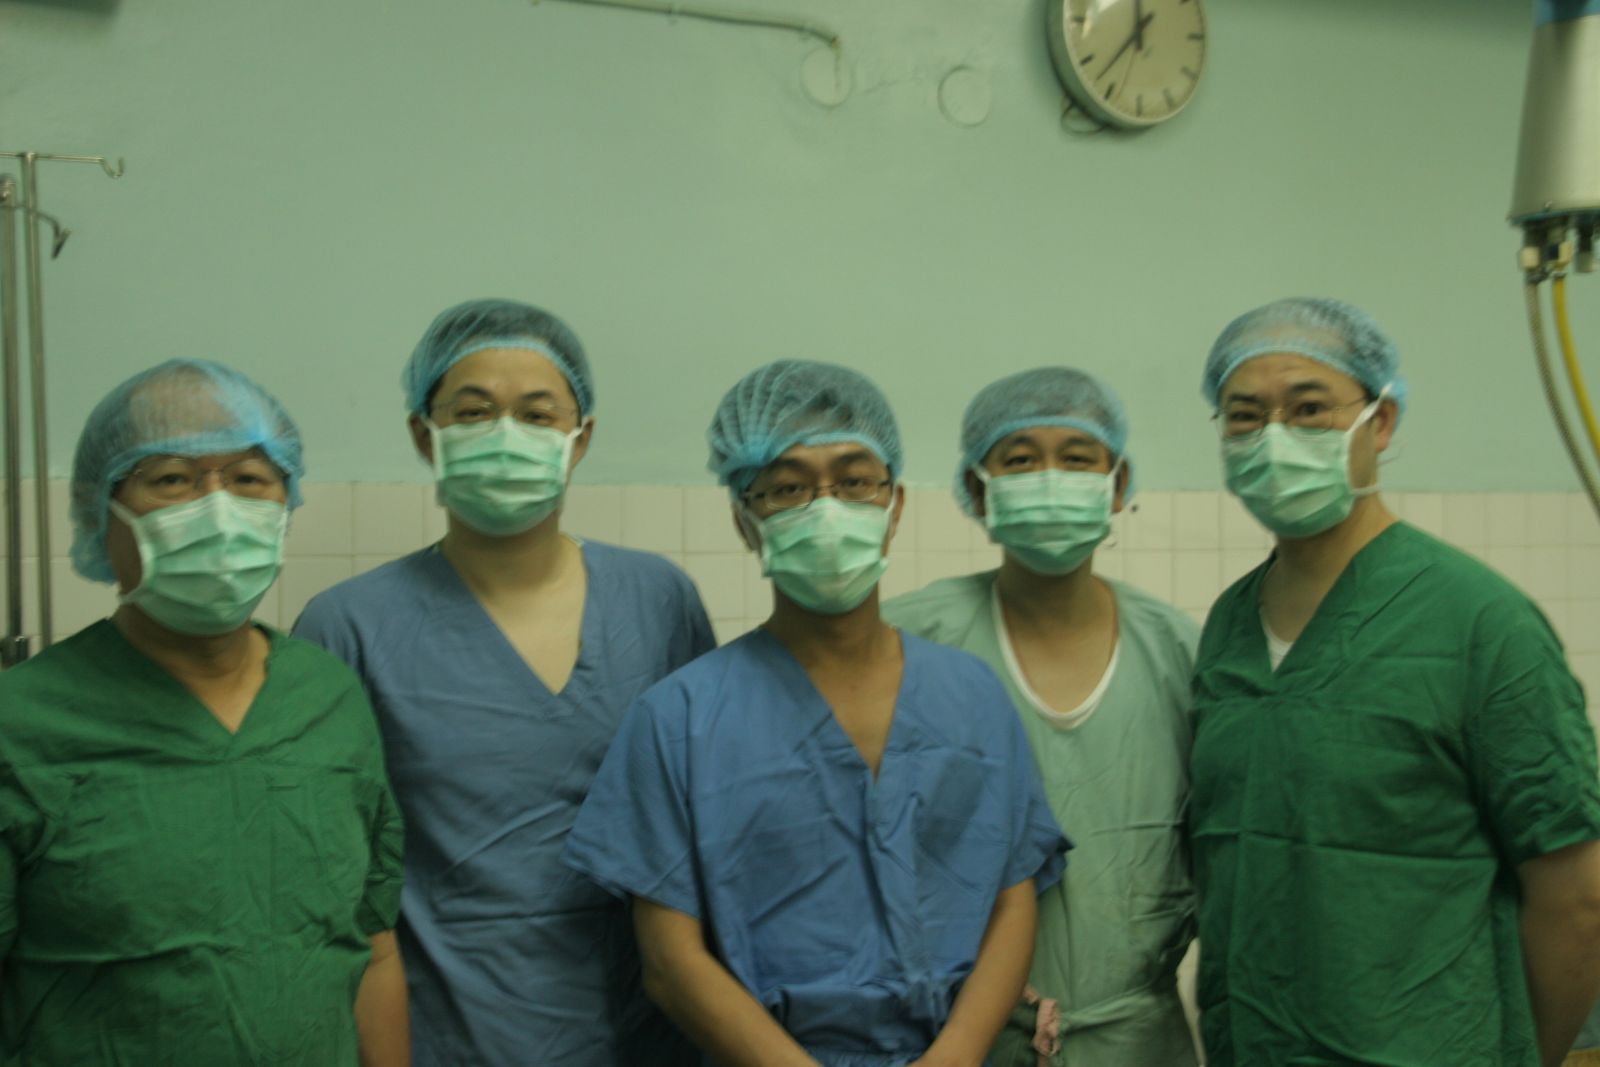 兒童外科劉君恕醫師(圖中)、一般外科夏振源醫師(圖右)等北榮醫療團隊一同合影留念